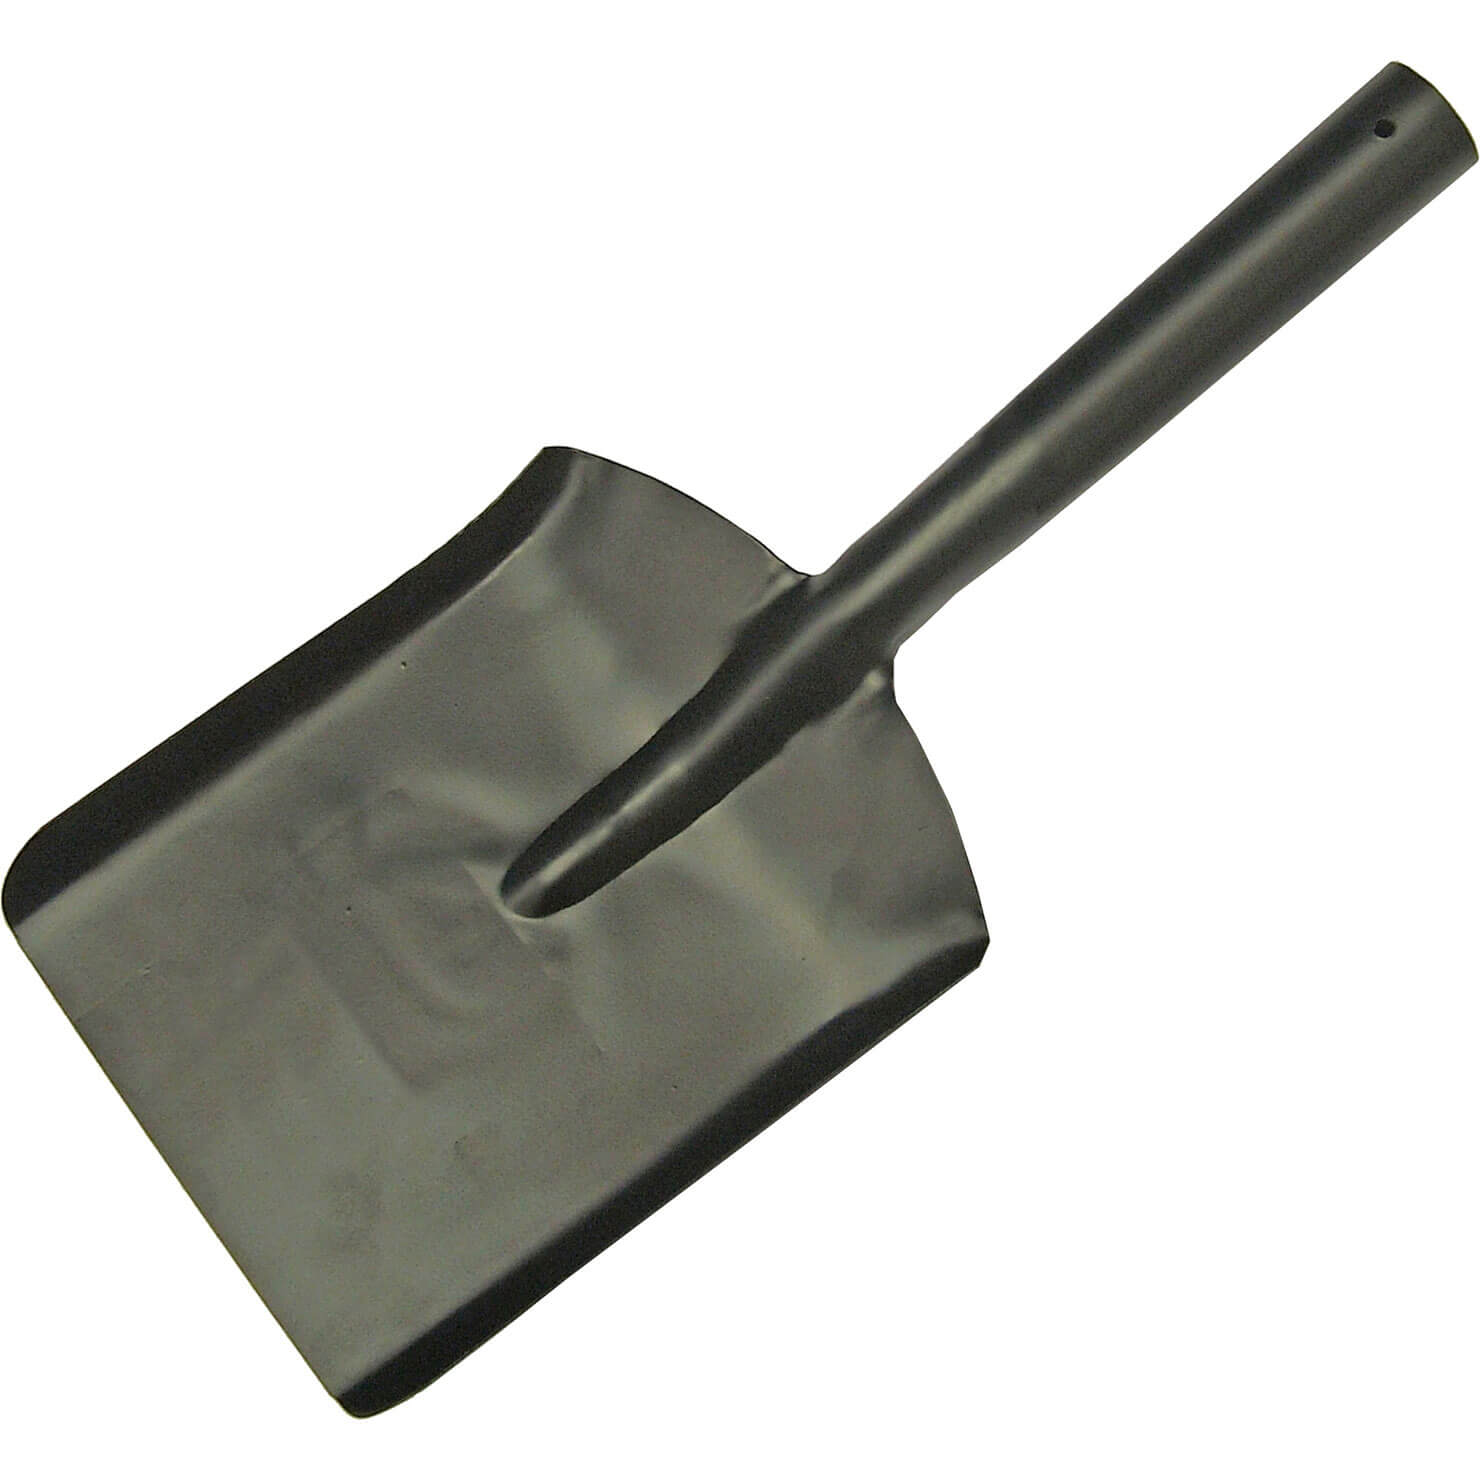 Image of Faithfull One Piece Steel Coal Shovel